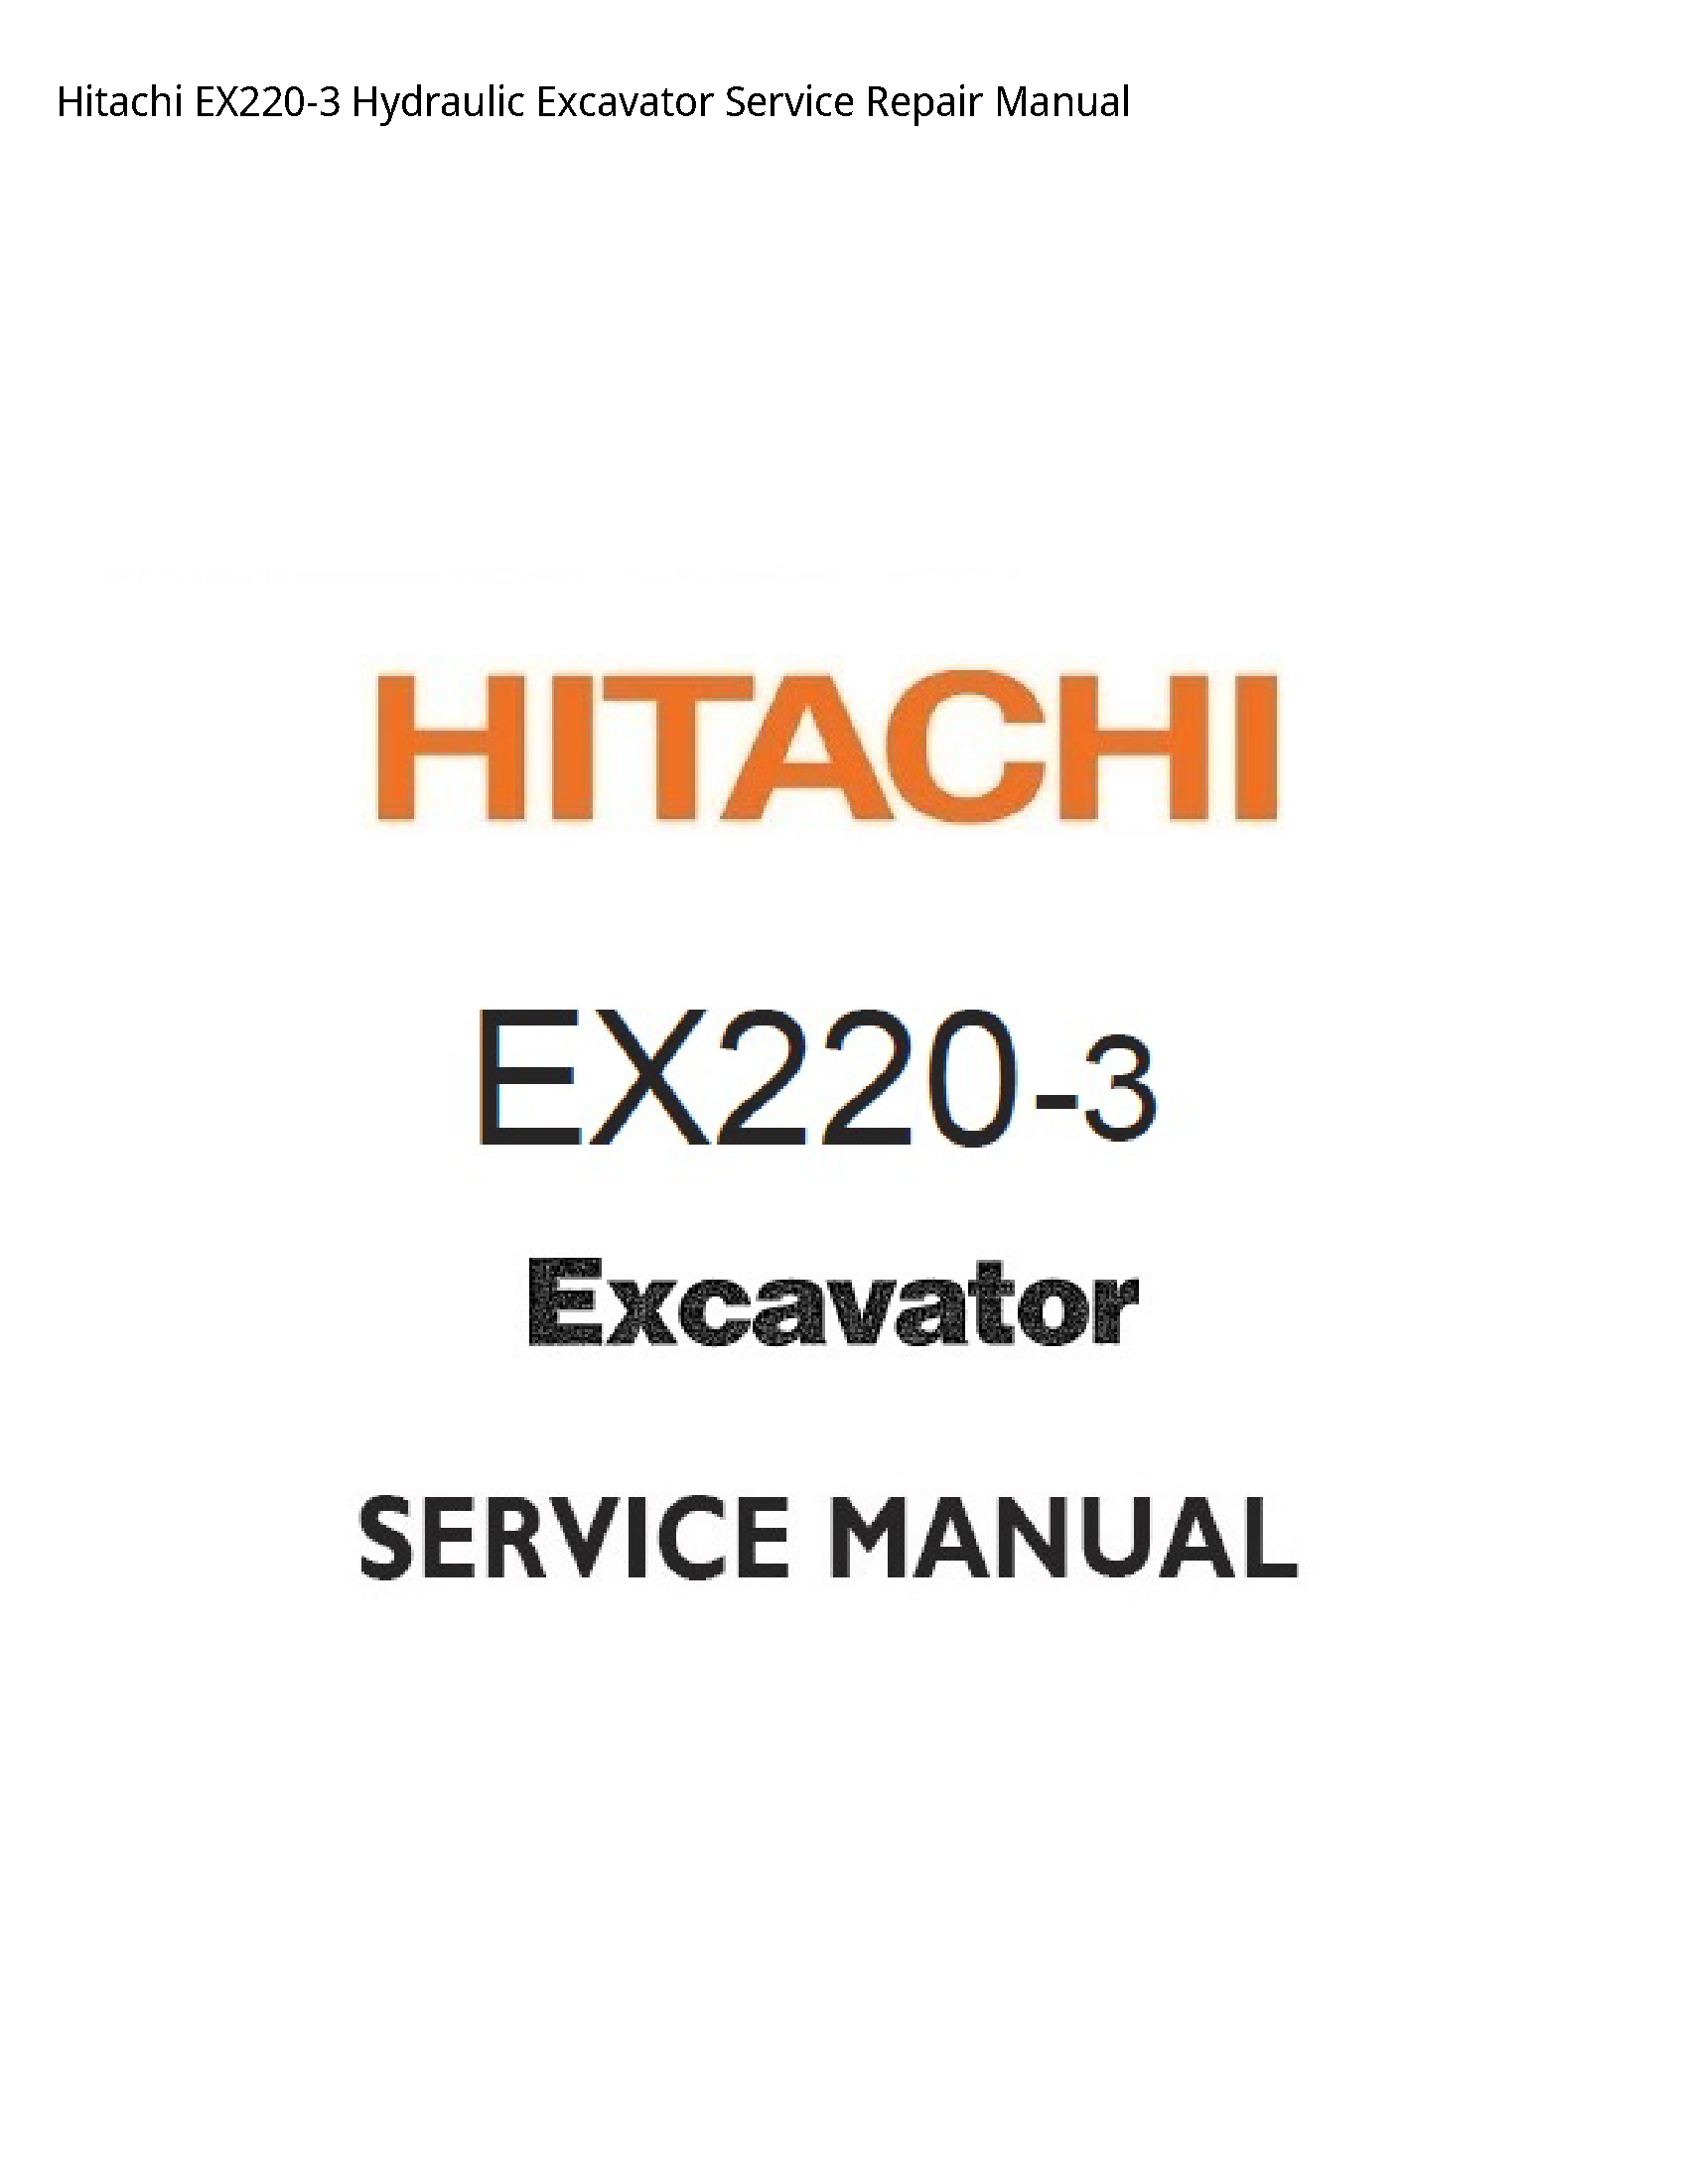 Hitachi EX220-3 Hydraulic Excavator manual